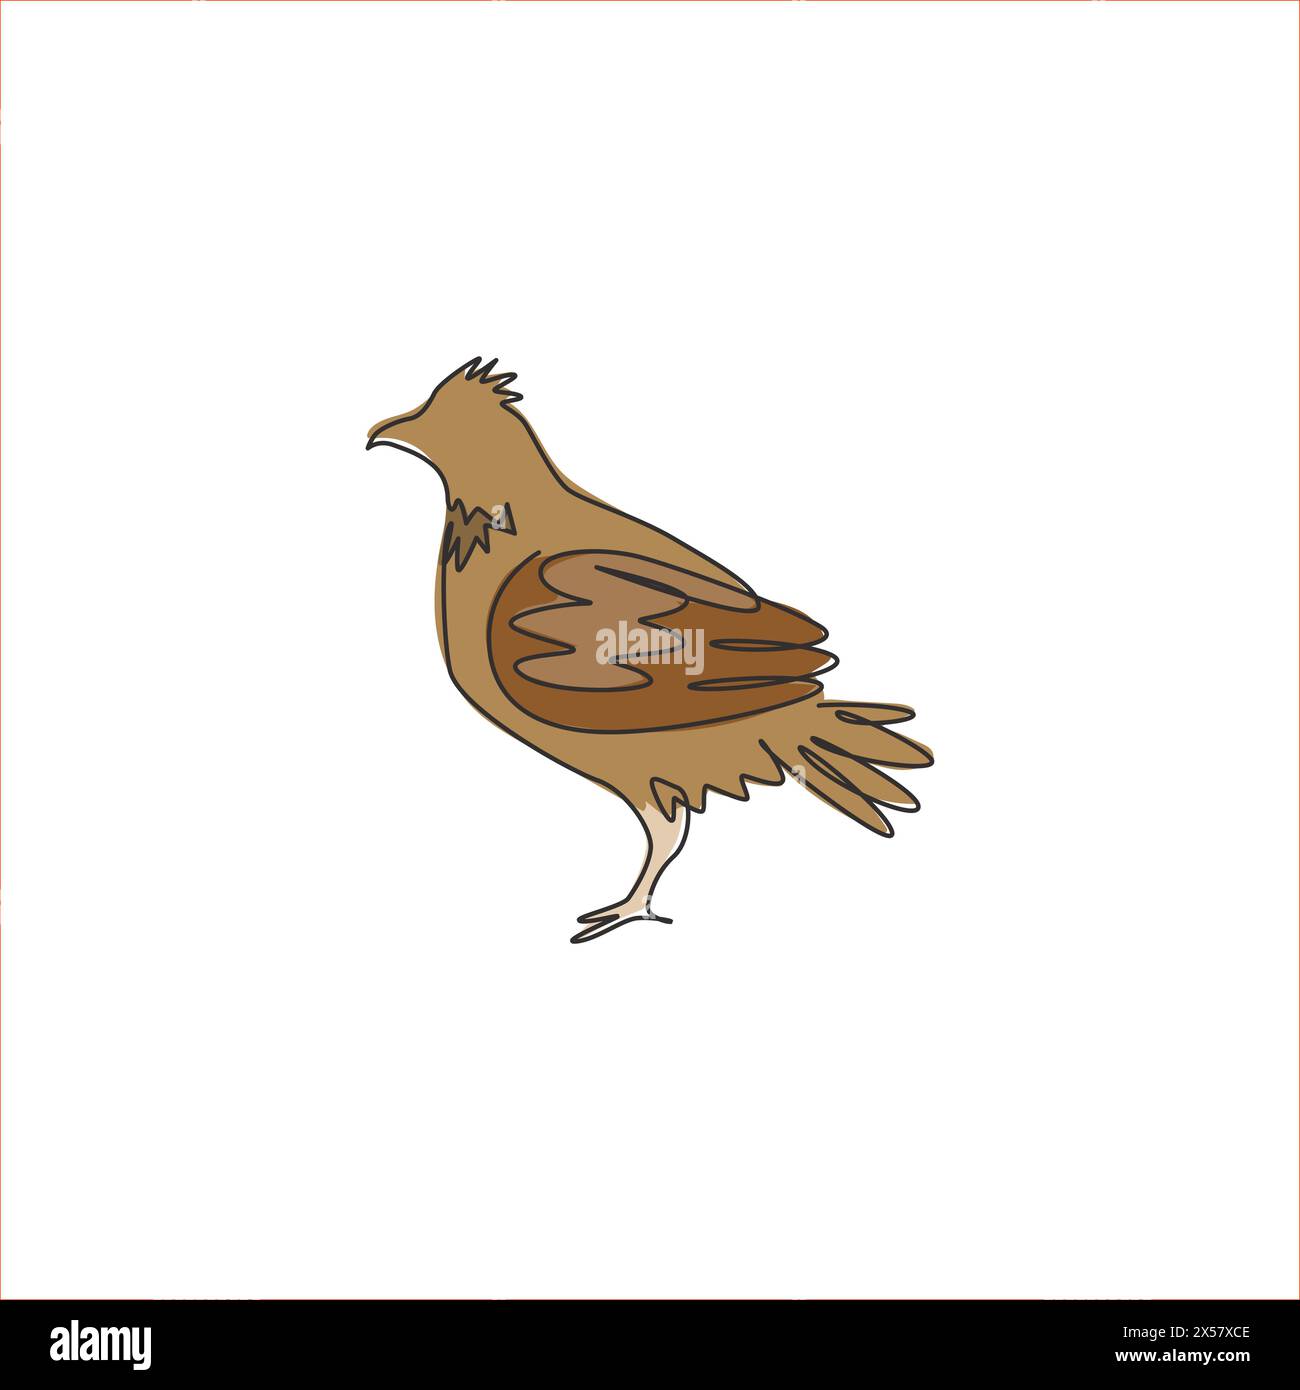 Disegno su una sola linea di adorabile uccello di fagioli per l'identità del logo della fondazione. Il concetto di mascotte di un gruppo di uccelli per l'icona della tradizione. Moderno Illustrazione Vettoriale